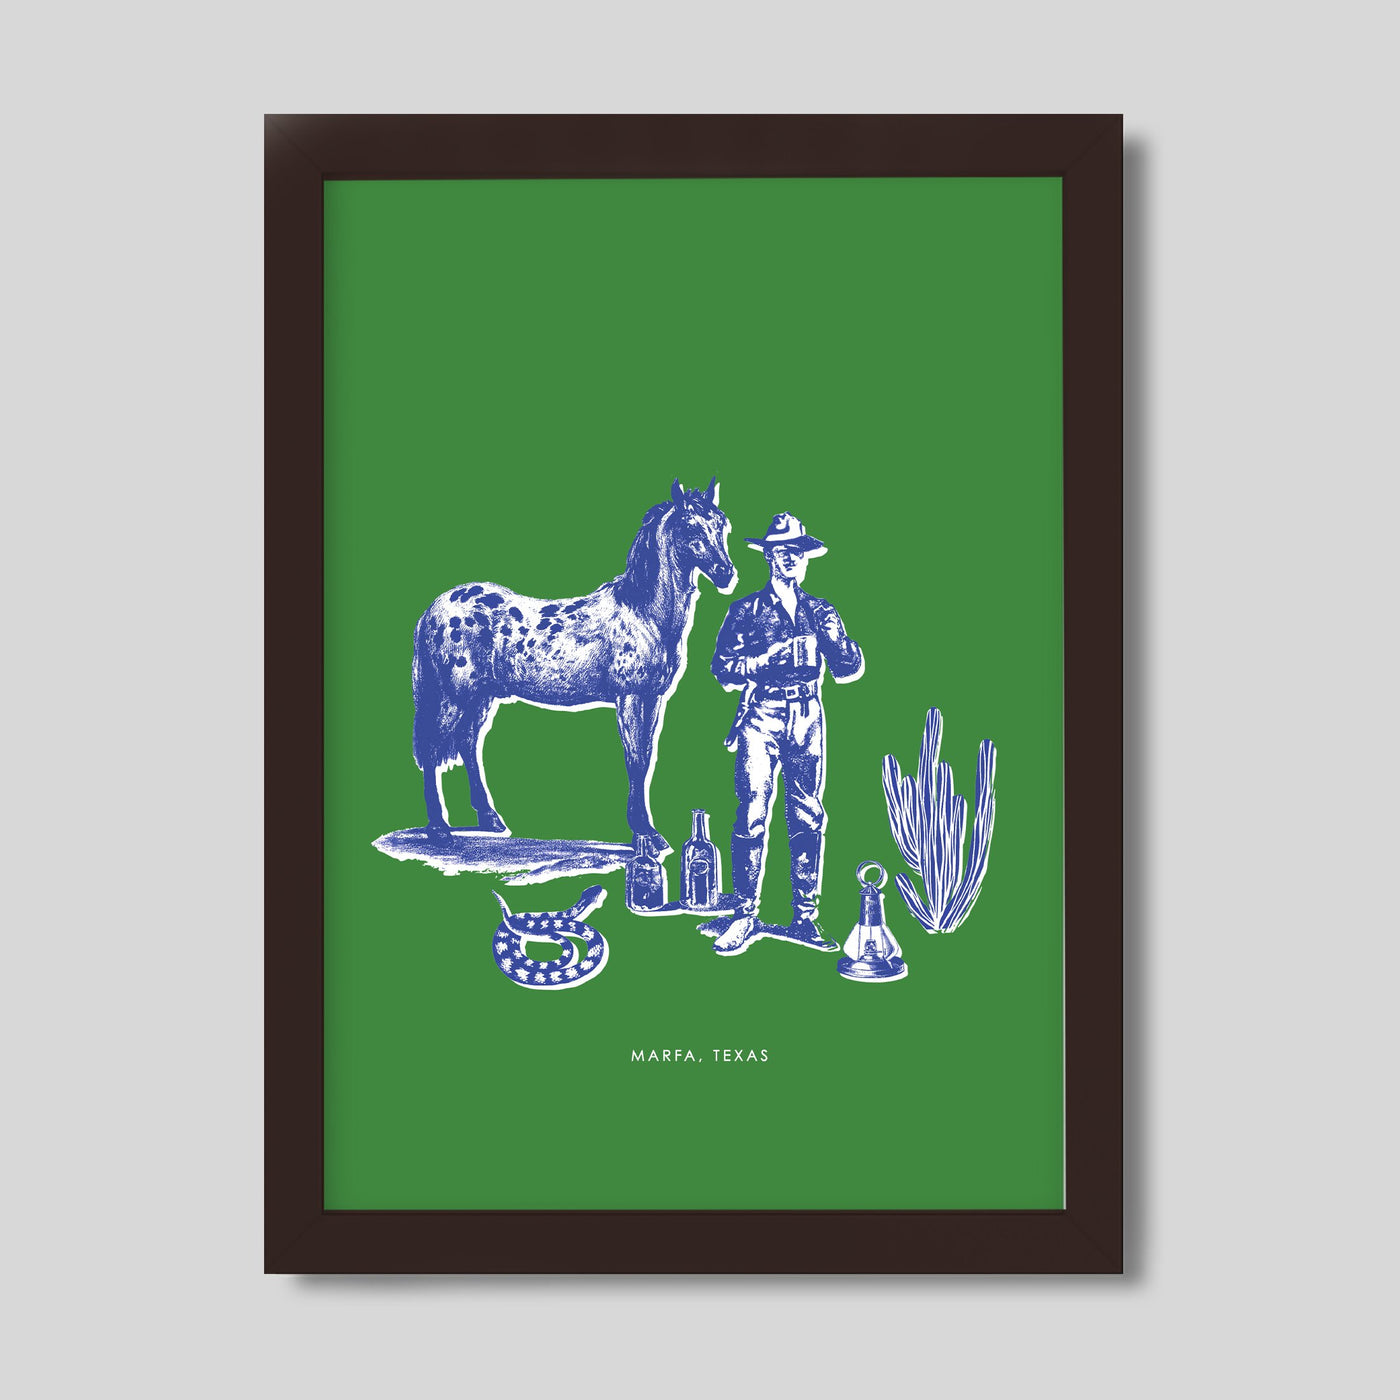 Gallery Prints Green / 8x10 / Walnut Frame Marfa Cowboy Print Katie Kime